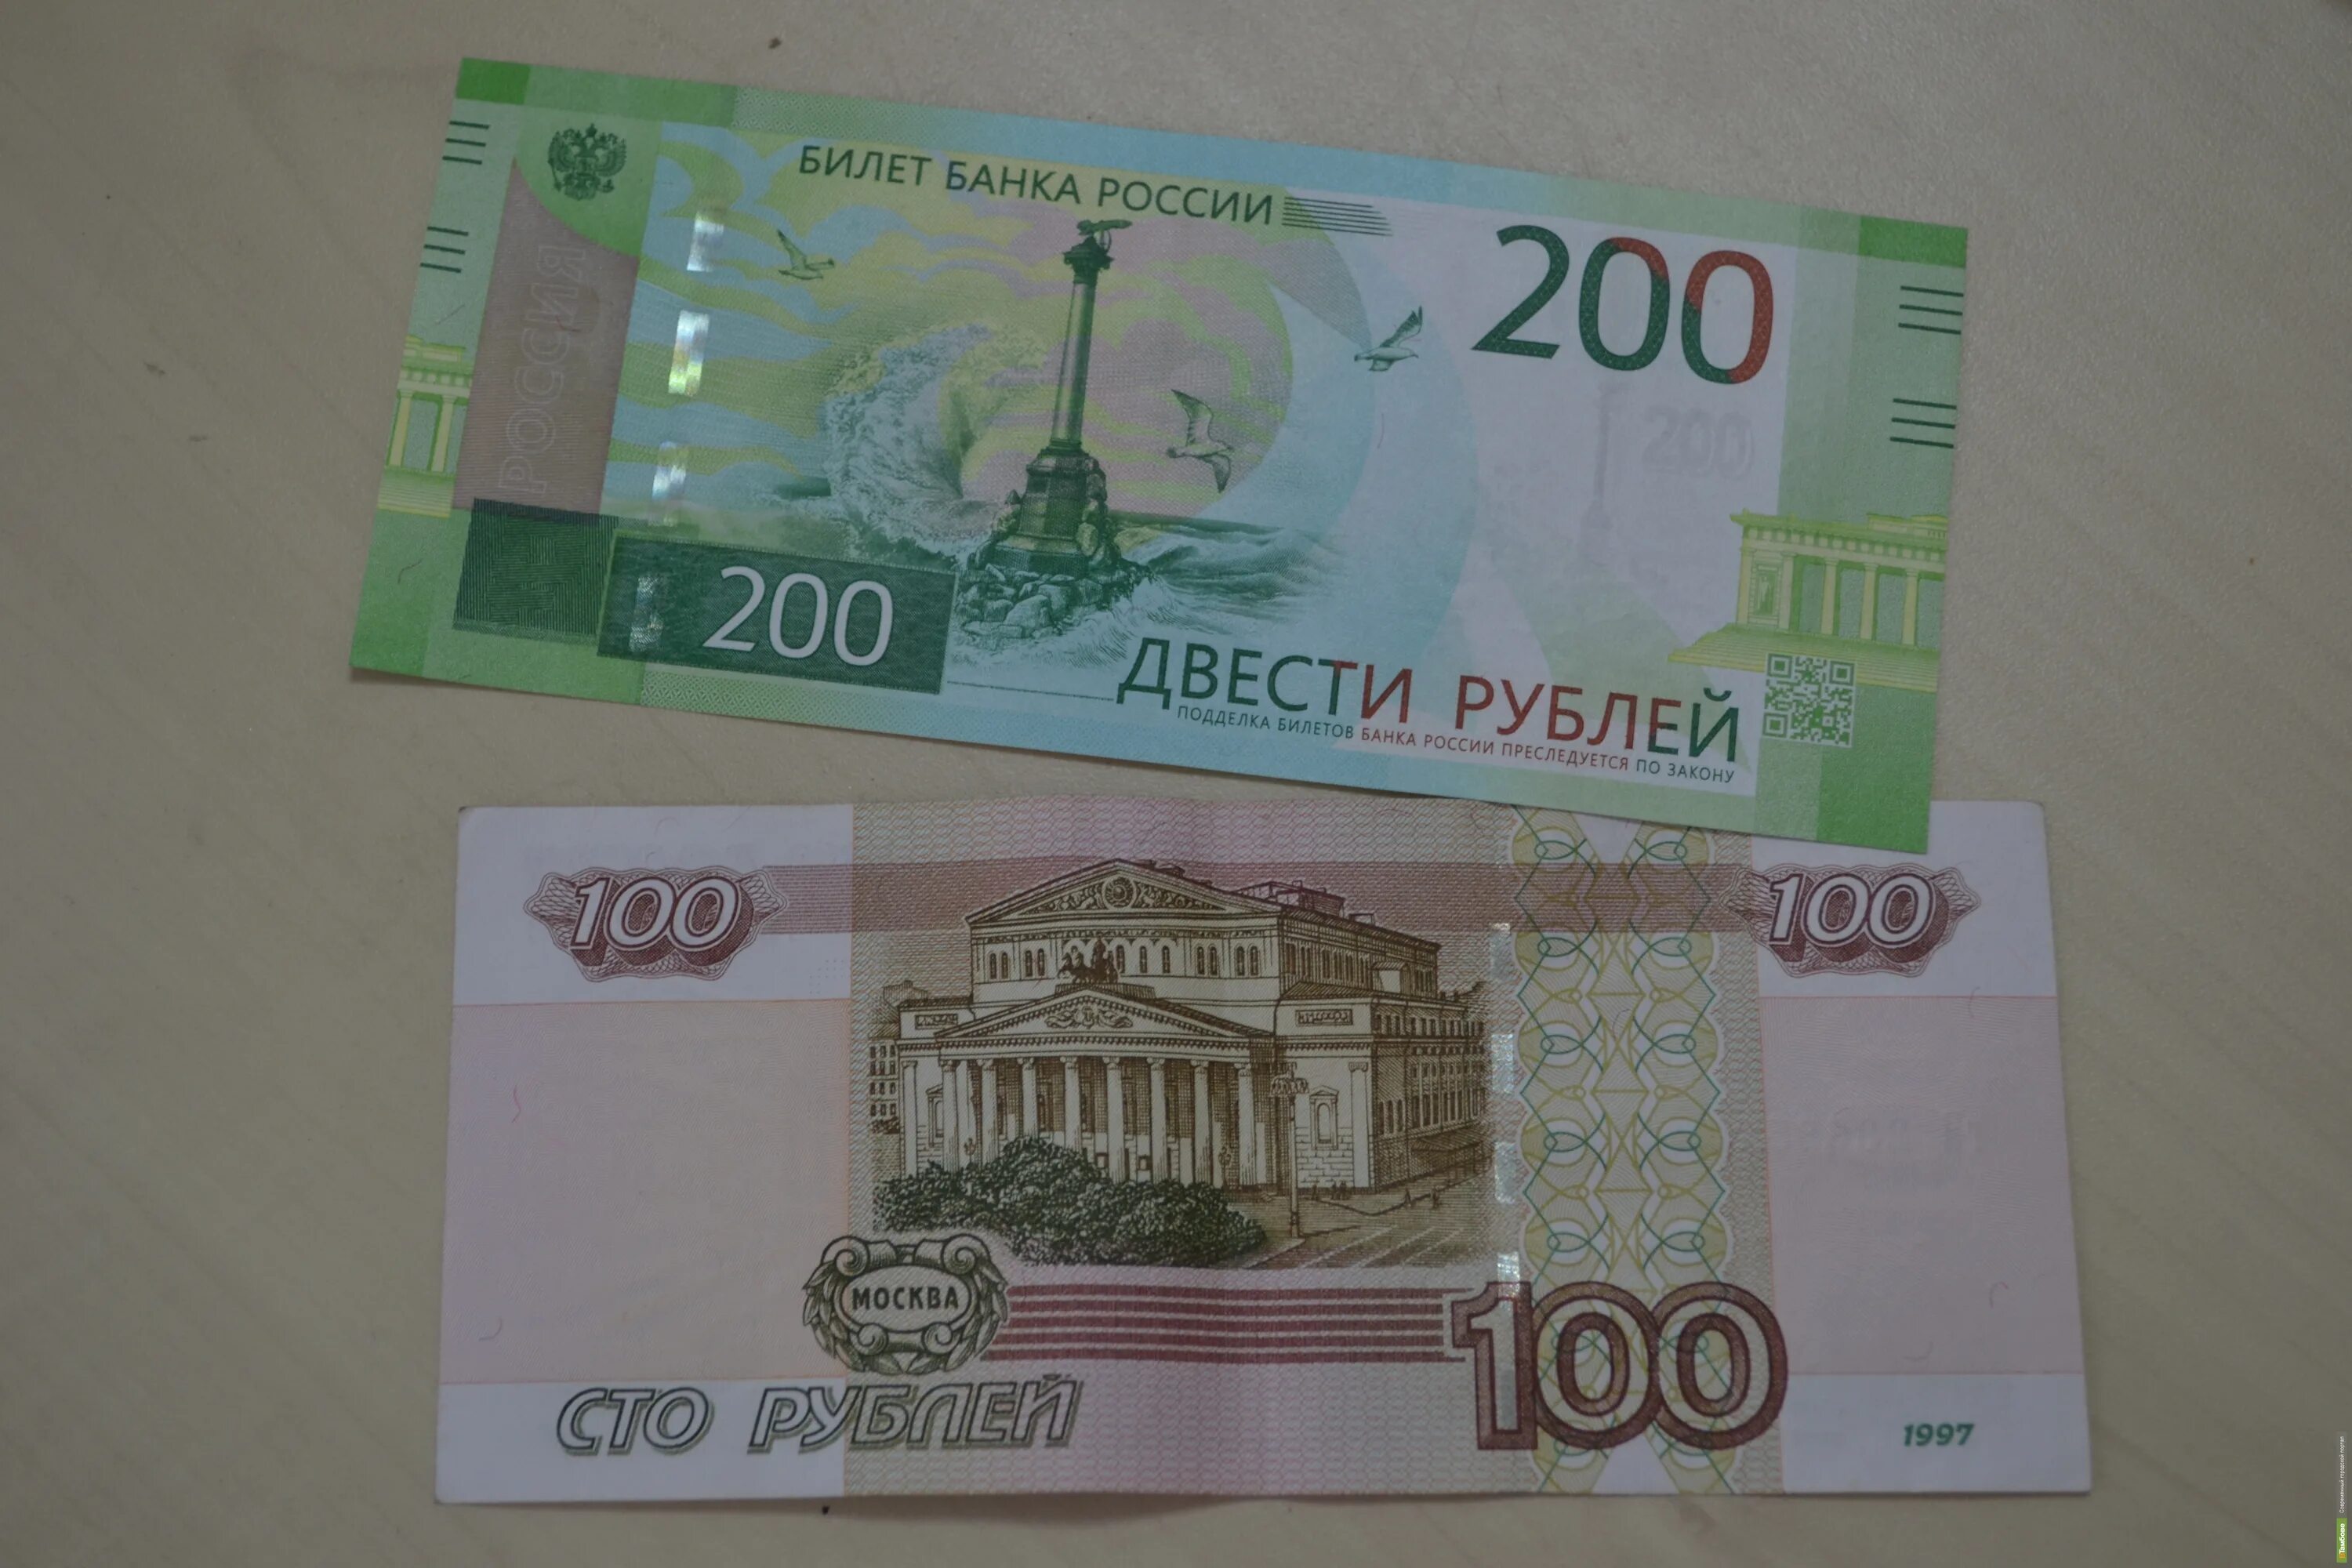 200 Рублей. 200 Рублей банкнота. 200 Рублей 1997. Новые купюры.